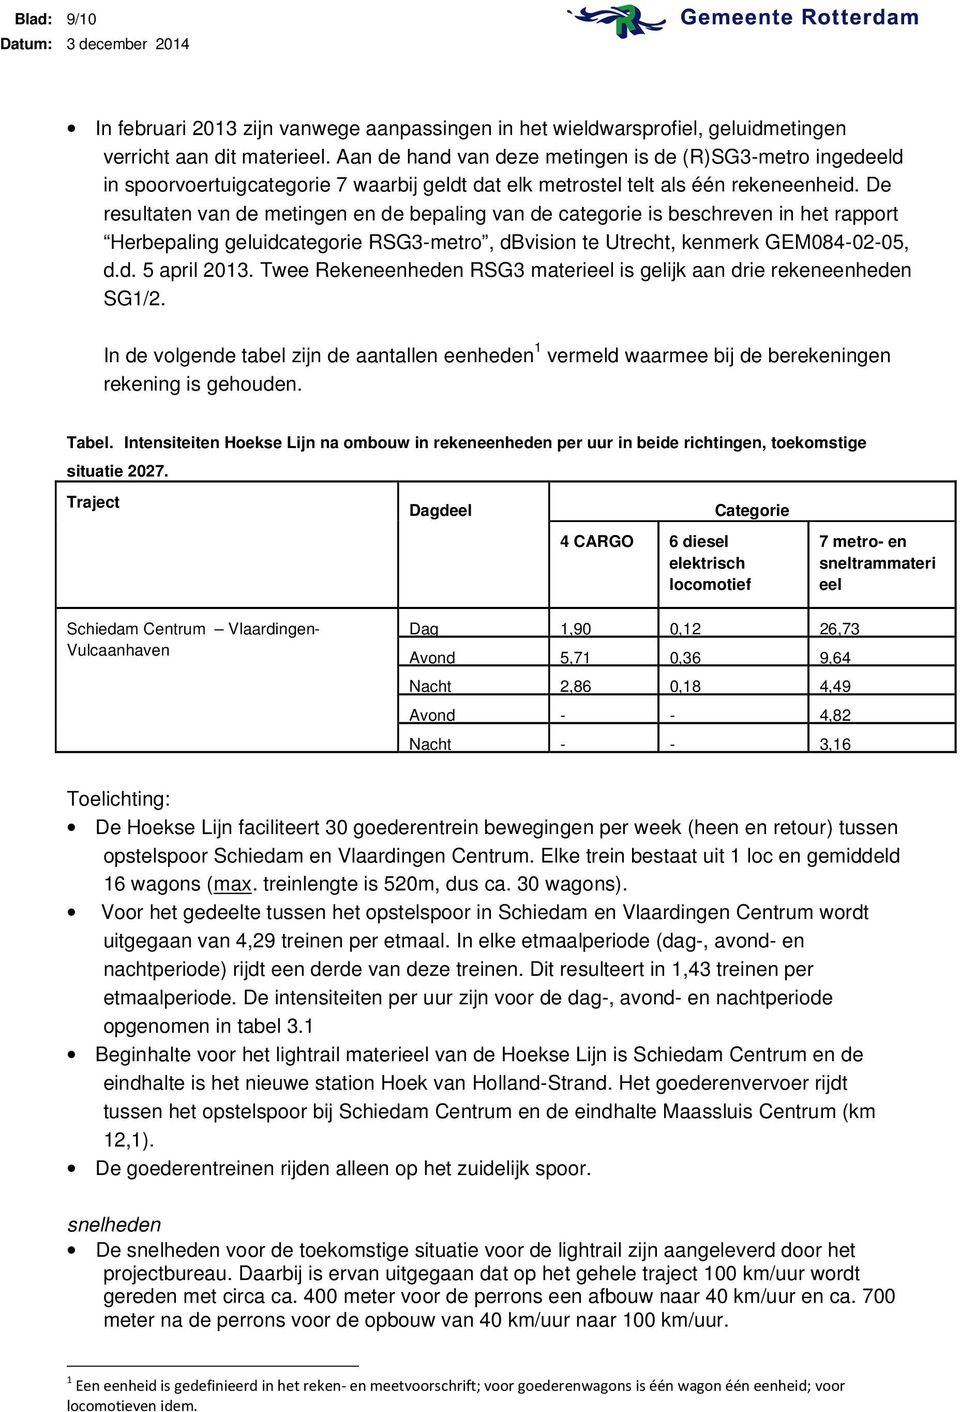 De resultaten van de metingen en de bepaling van de categorie is beschreven in het rapport Herbepaling geluidcategorie RSG3-metro, dbvision te Utrecht, kenmerk GEM084-02-05, d.d. 5 april 2013.